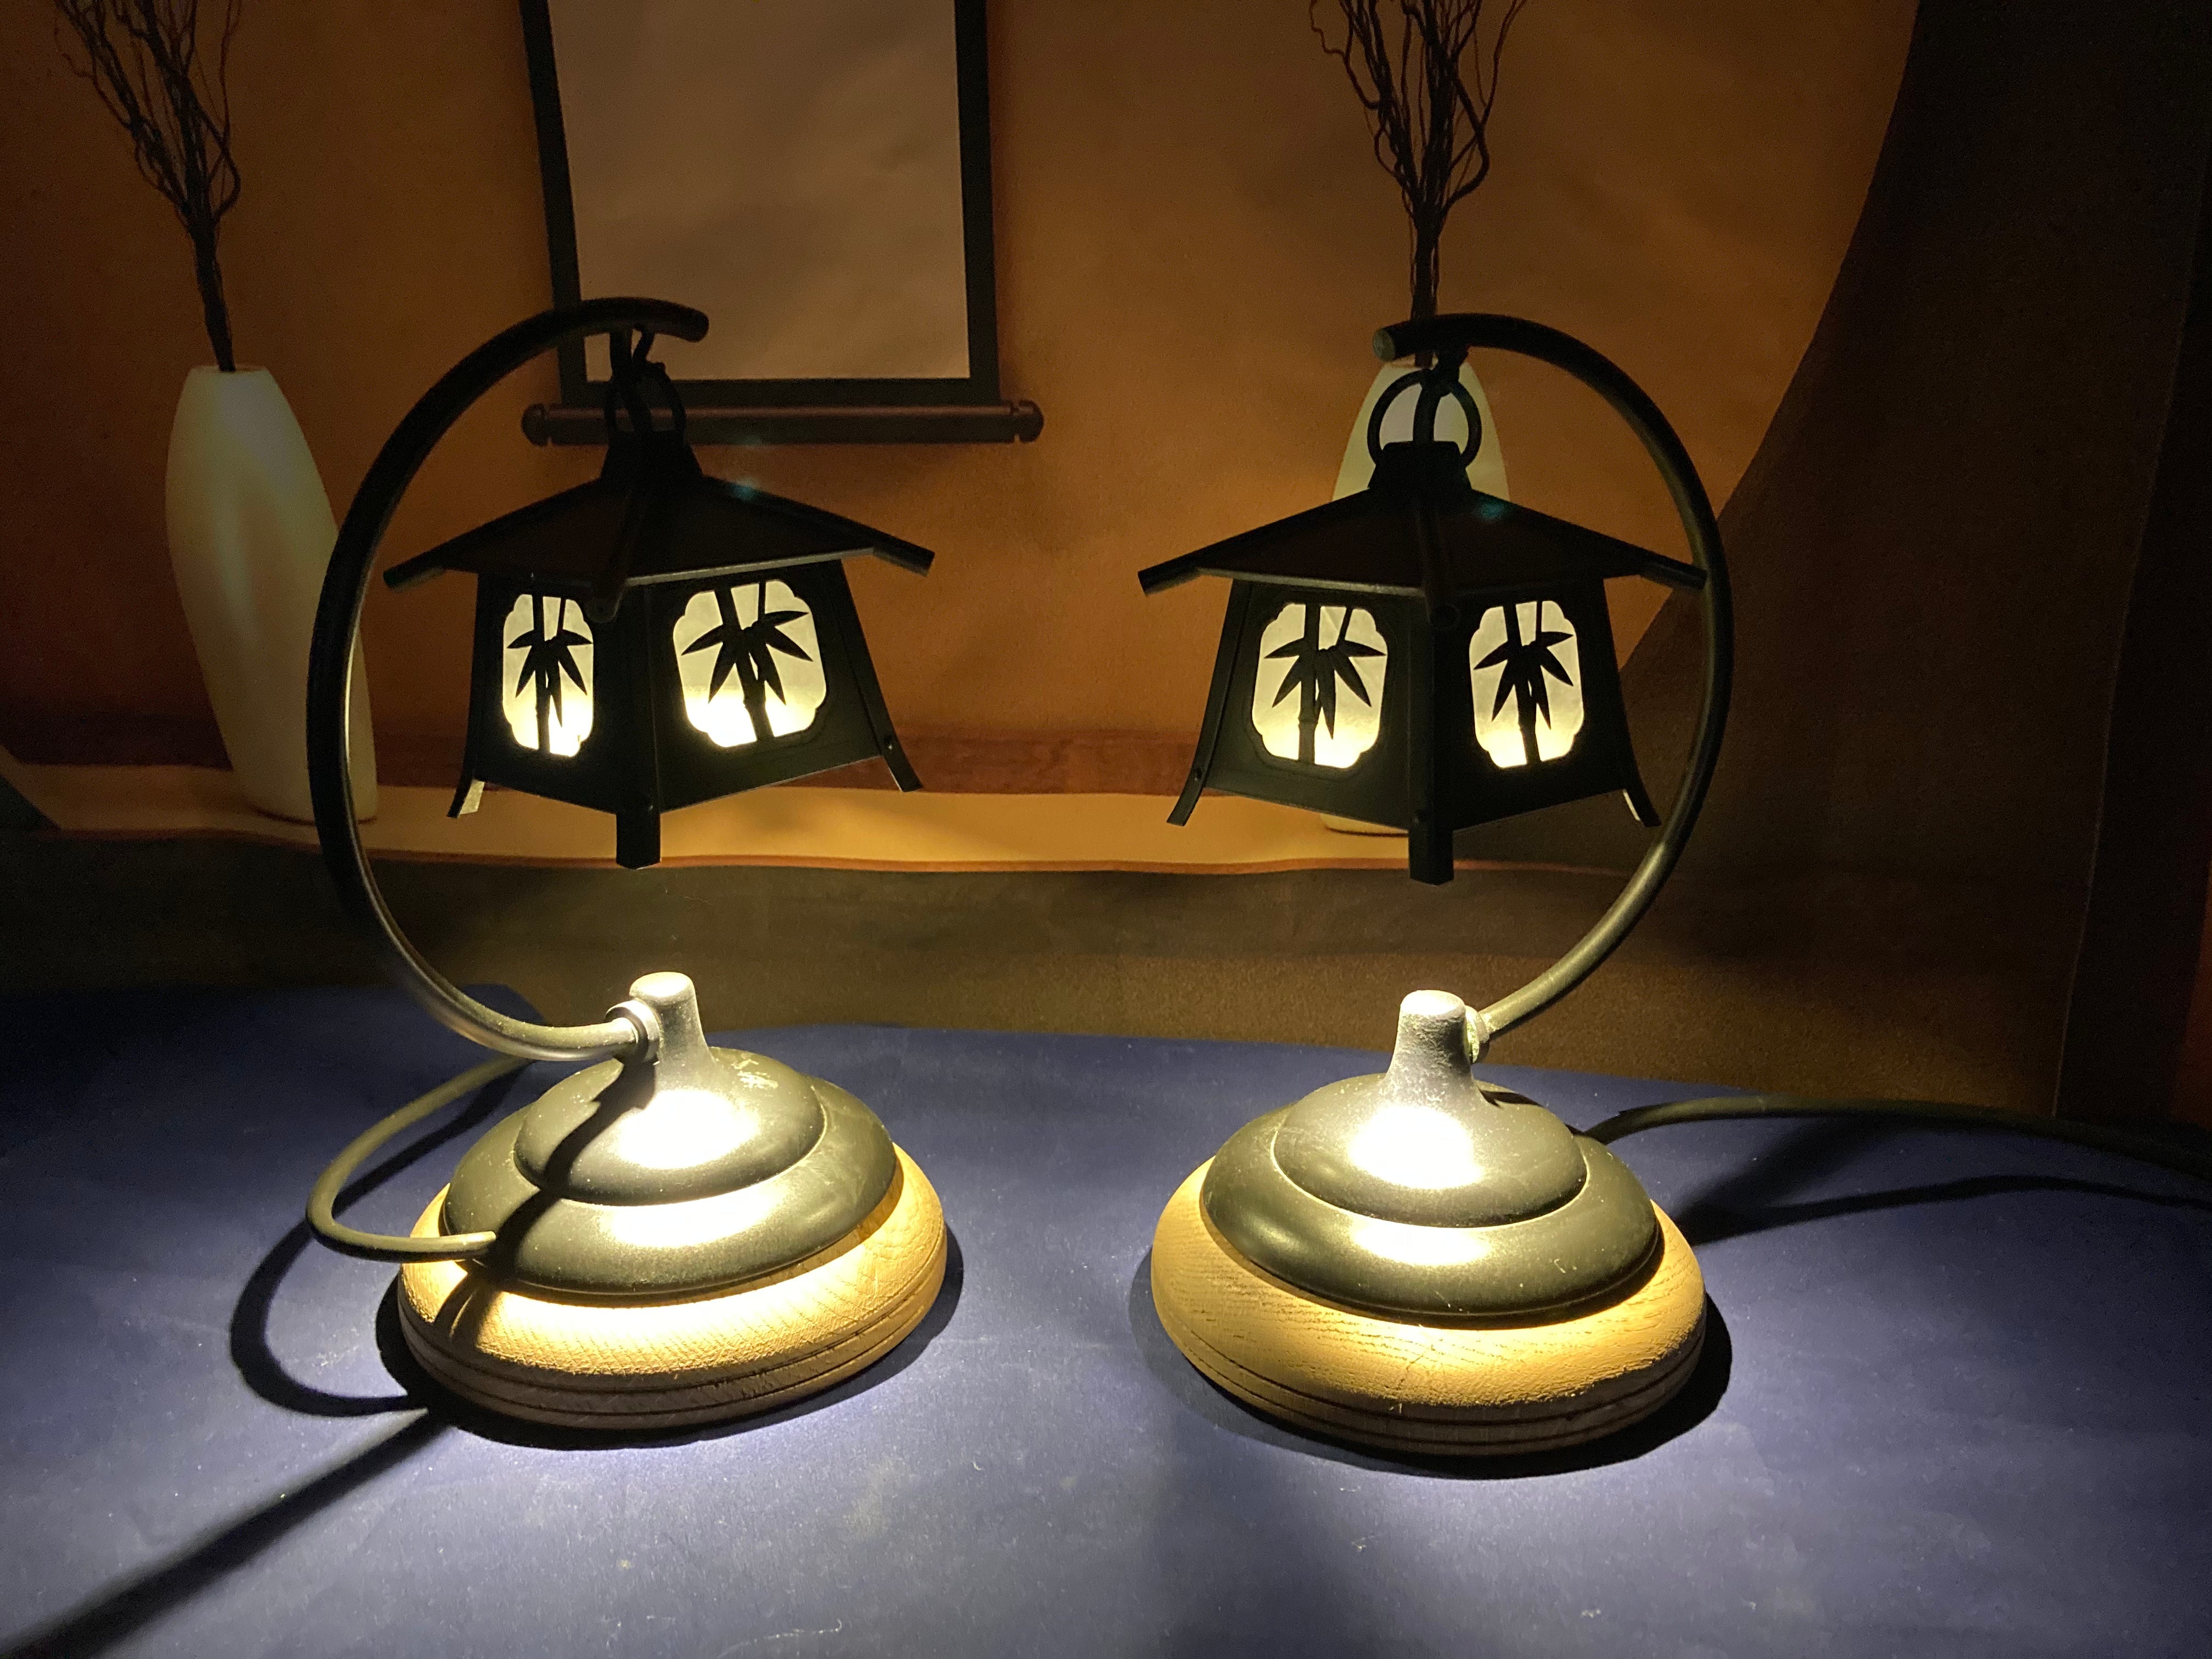 Two small but sweet lamps - Yamazakura